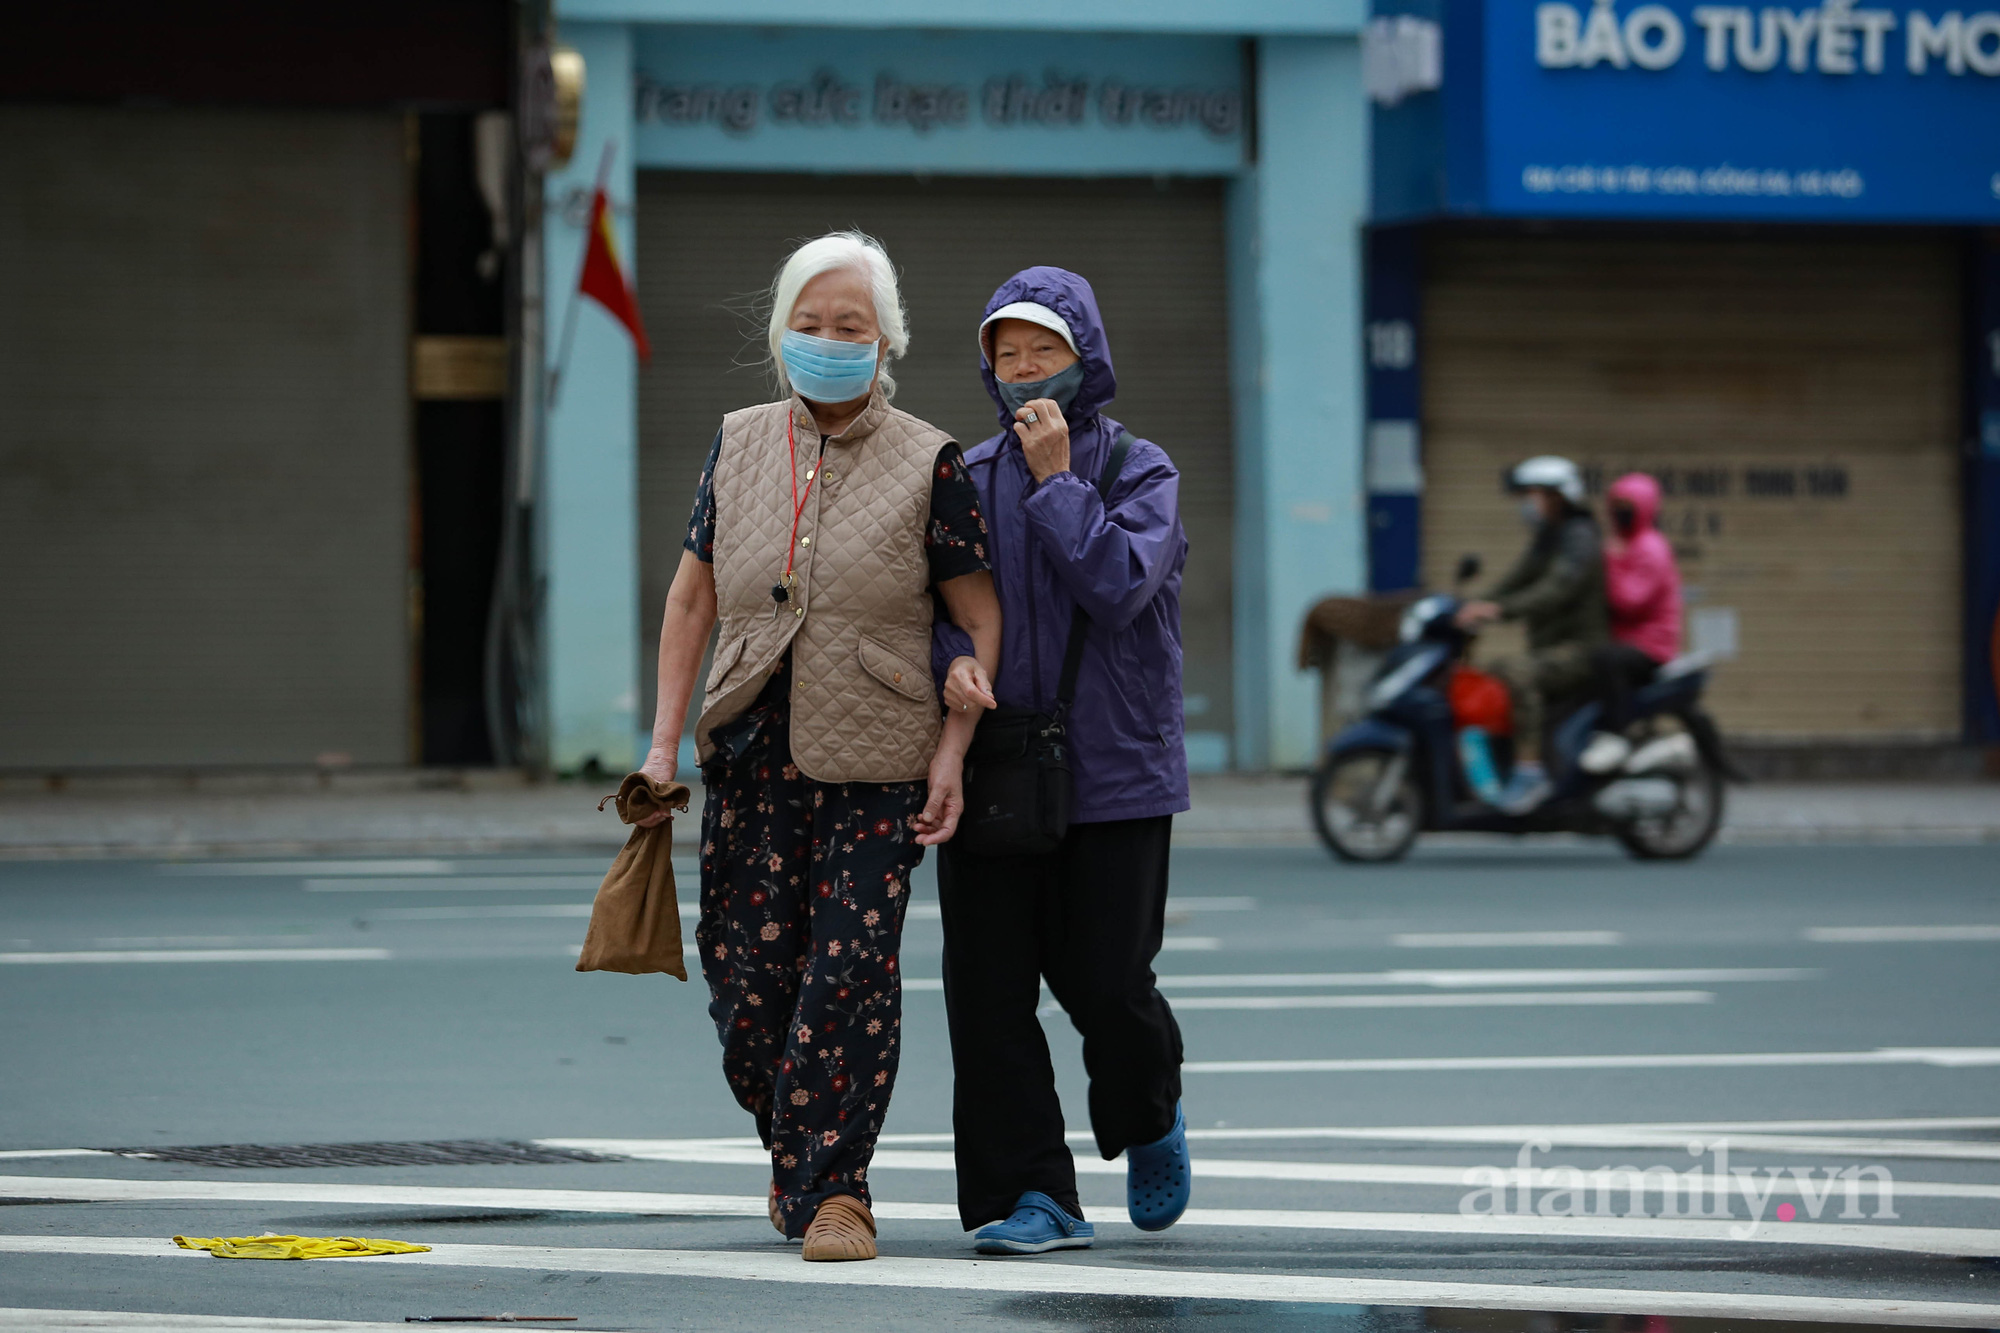 Ngày cuối tuần trời trở lạnh, người Hà Nội khăn len, áo ấm trùm kín mít khi ra đường - Ảnh 5.